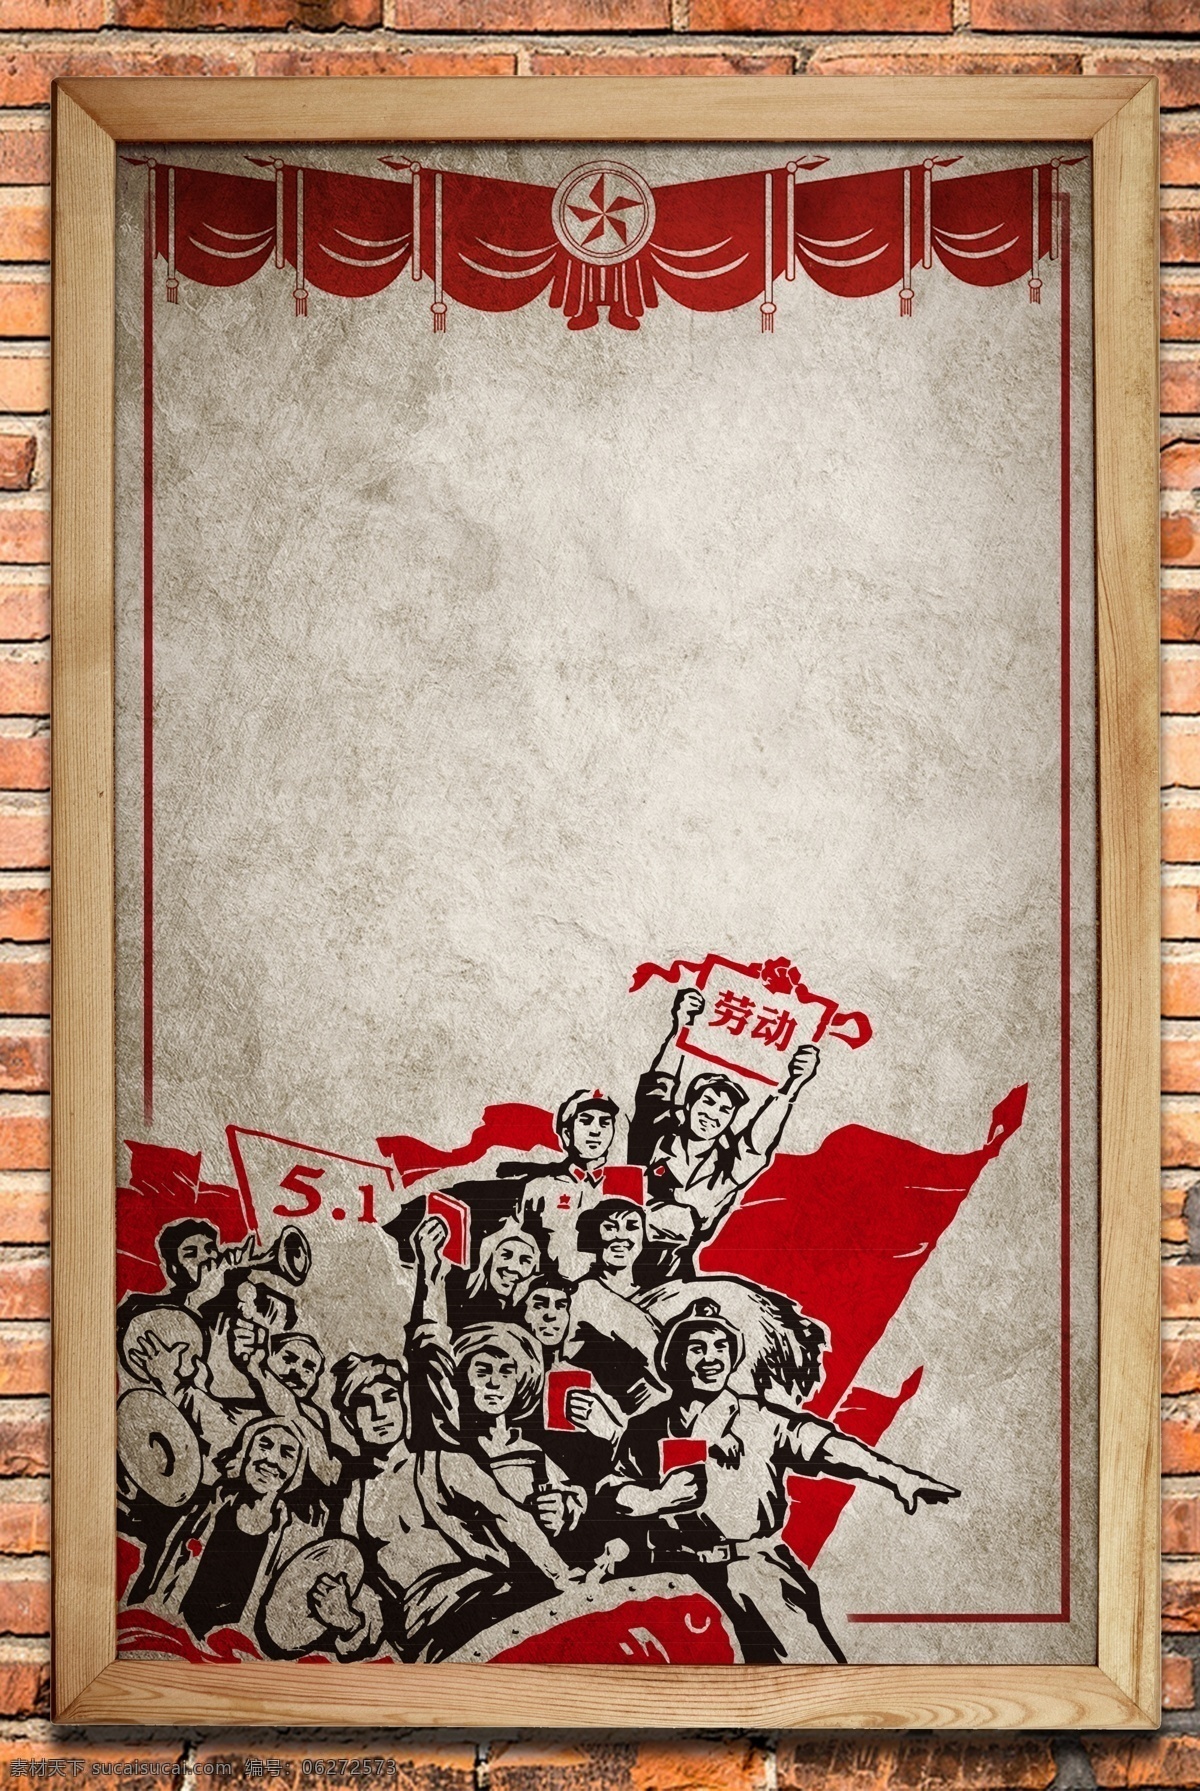 51 劳动节 老 旧 墙面 宣传海报 51劳动节 劳动工人 老旧墙面 画框 宣传 海报 广告 背景